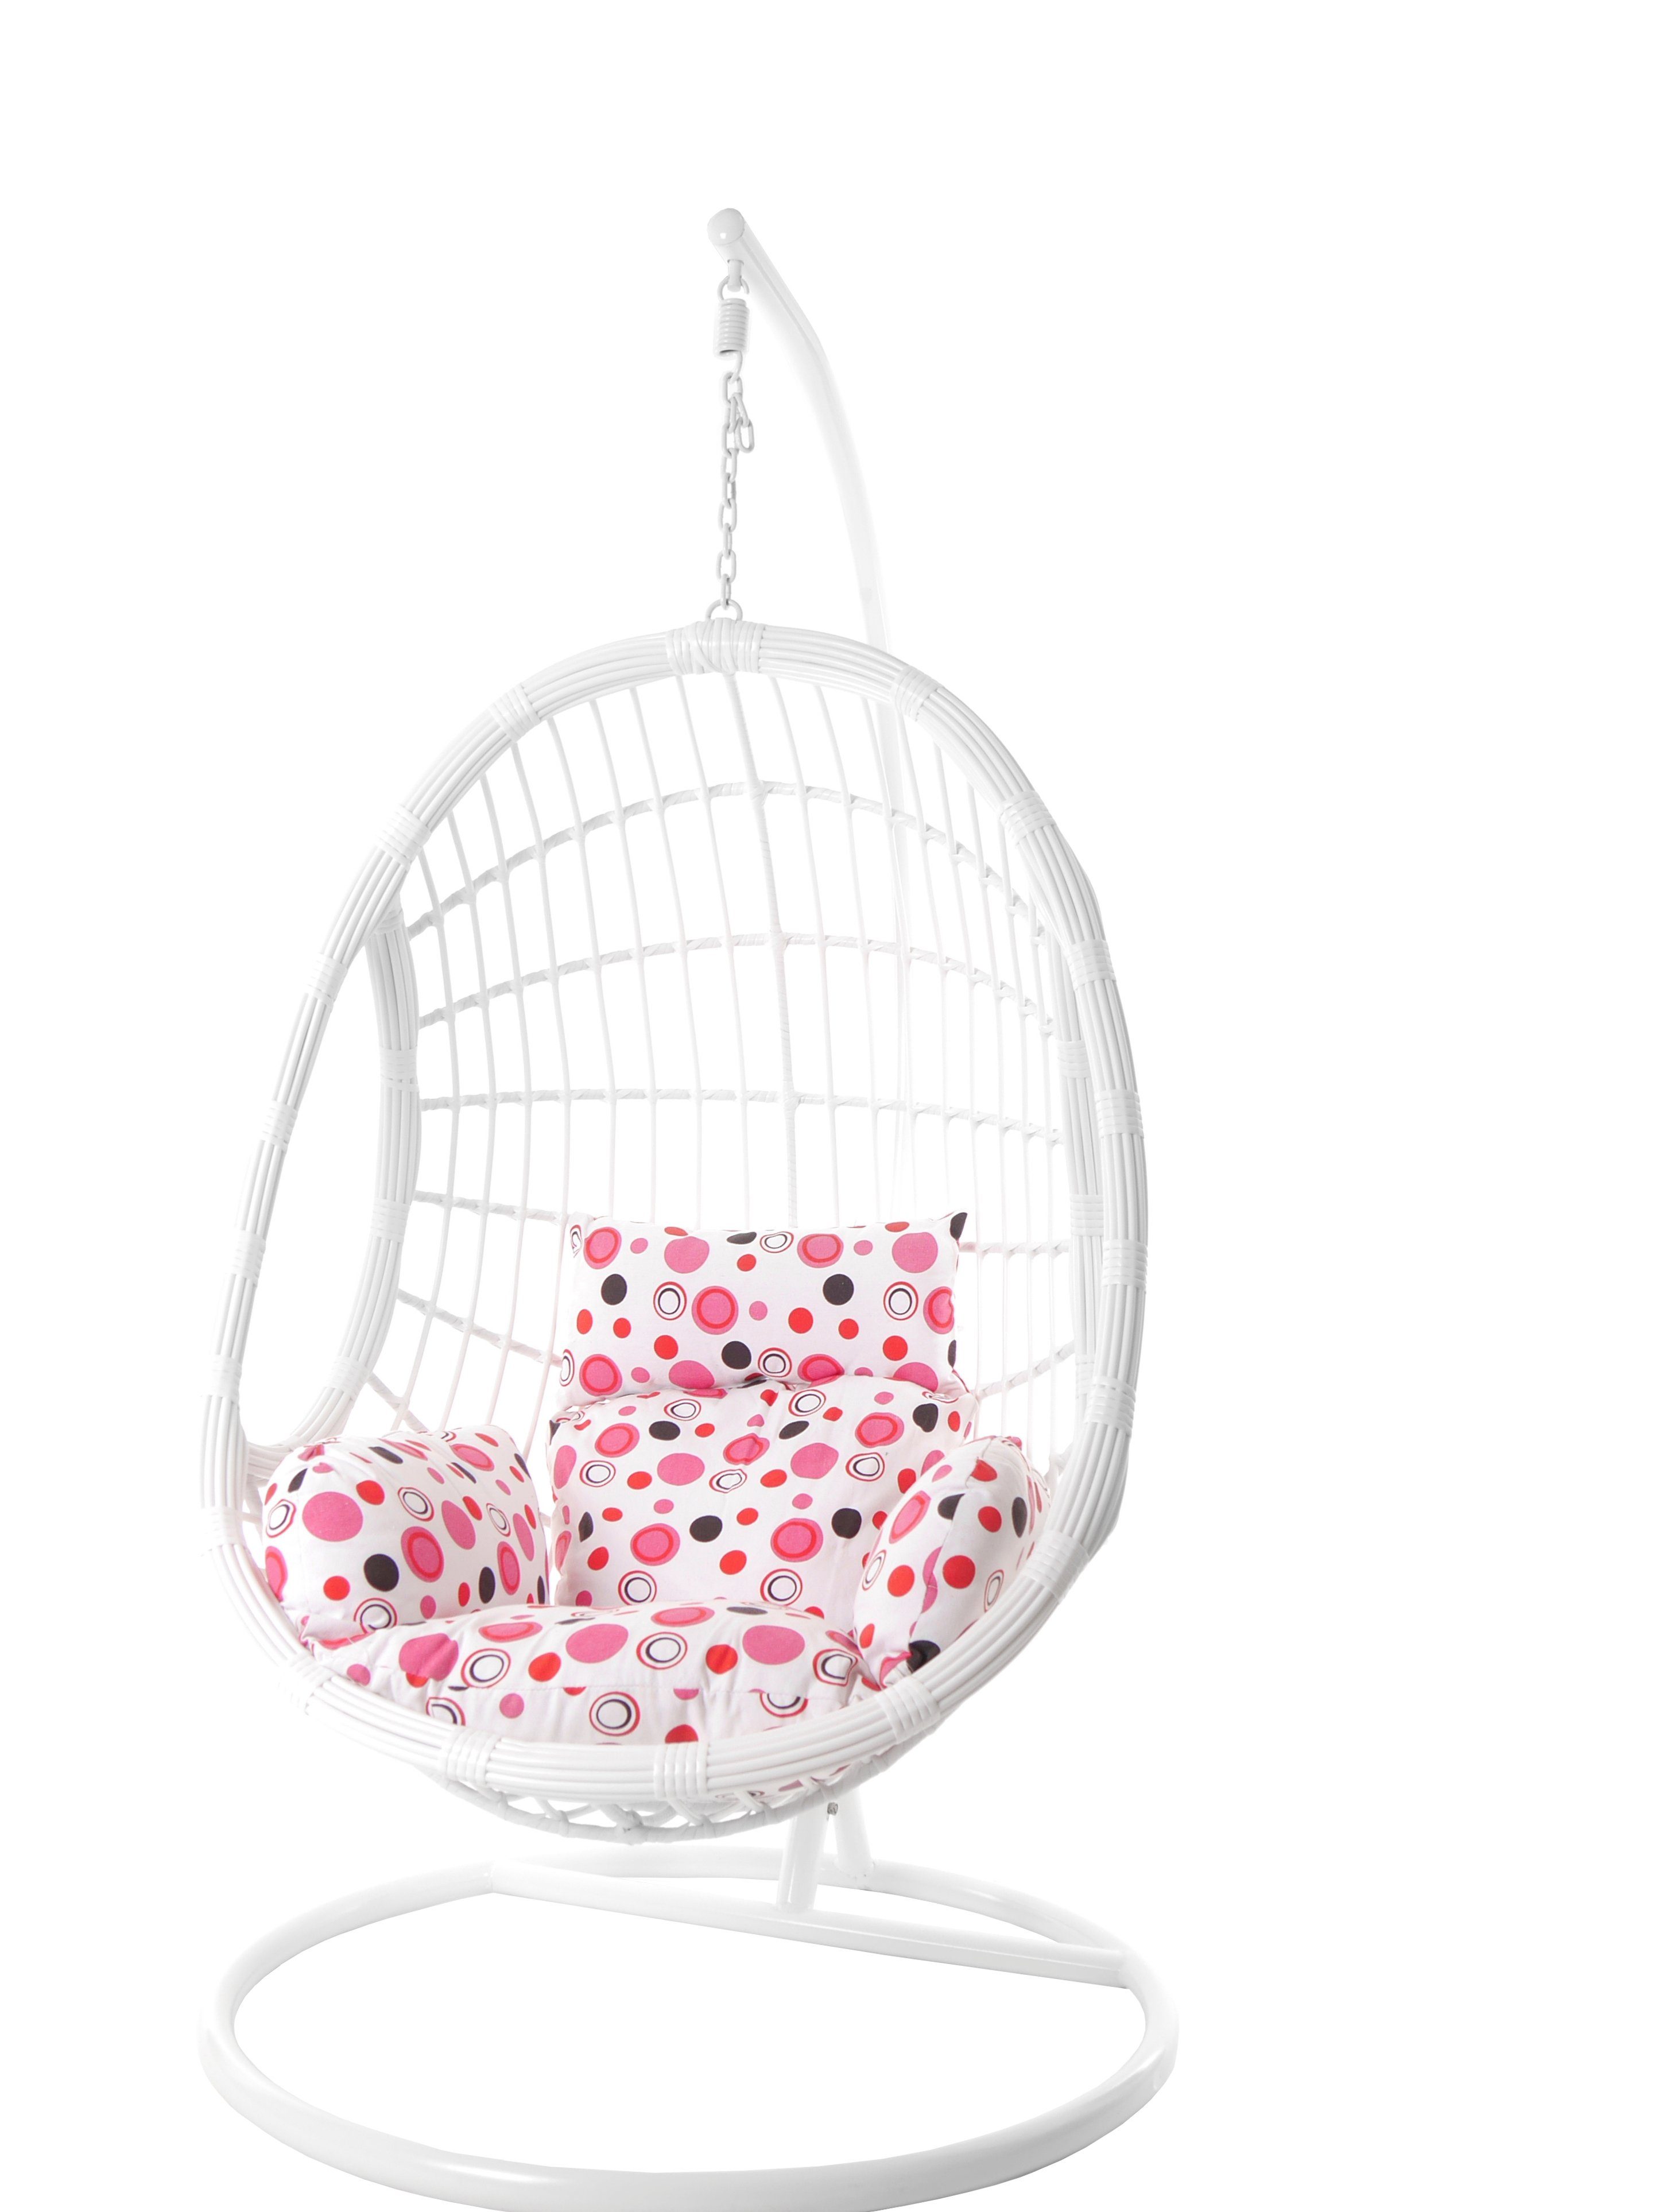 KIDEO Hängesessel Hängesessel PALMANOVA, Schwebesessel (3039 Loungemöbel rosa und dot) lemonade moderne gepunktet Gestell weiße Nest-Kissen, mit und